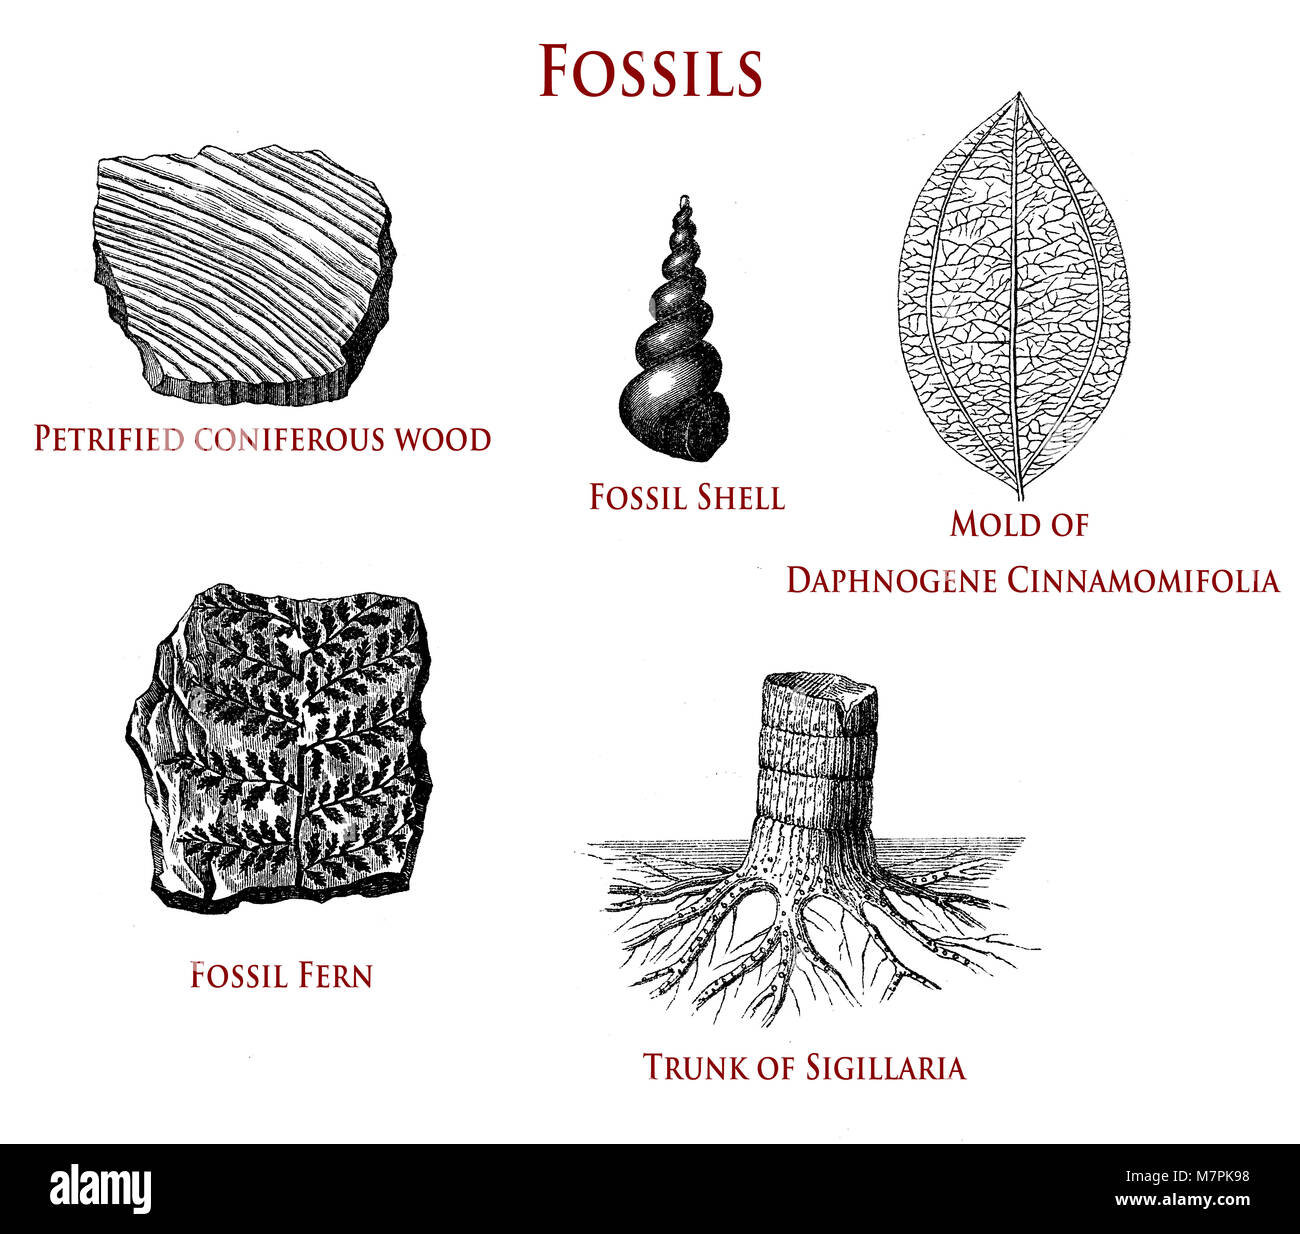 Illustration vintage de fossiles : bois de conifères pétrifiés, shell, fern,sigillaria et daphnogene cinnamomifolia Banque D'Images